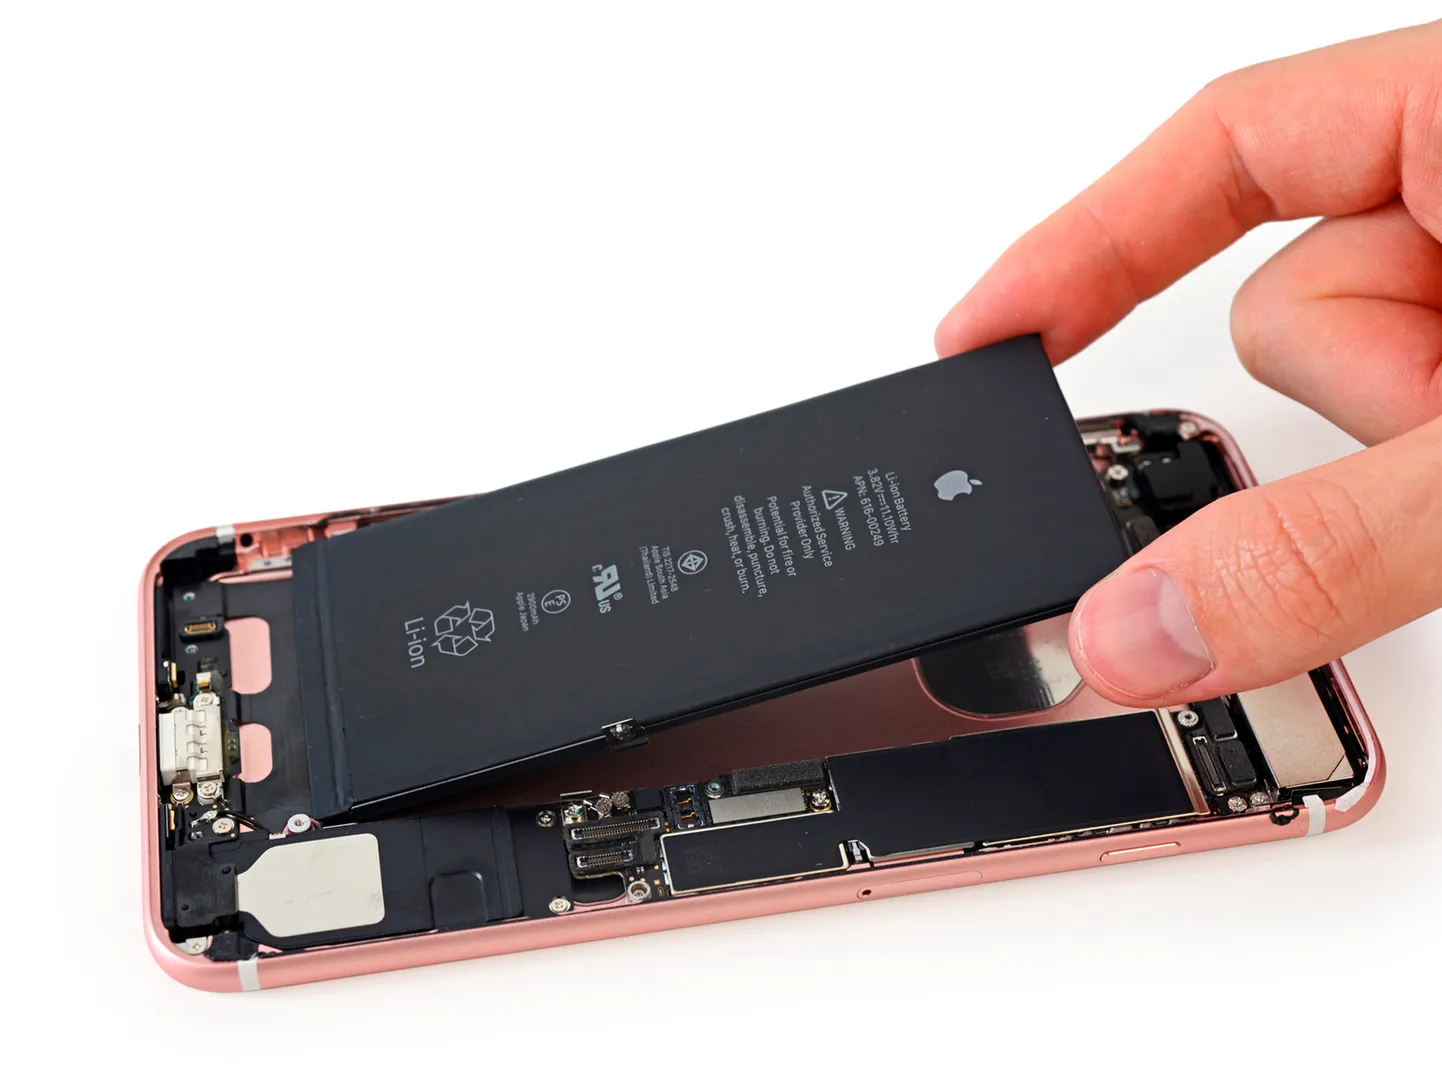 Разобранный iPhone 7 Plus на мероприятии iFixit в Японии. Если новый регламент Евросоюза не регулирует сложность замены батареи, производители могут рекомендовать пользователям выполнять сложную разборку и замену самостоятельно, предоставив вспомогательные материалы и инструменты, как это предлагает iFixit в сотрудничестве с Samsung и Apple.